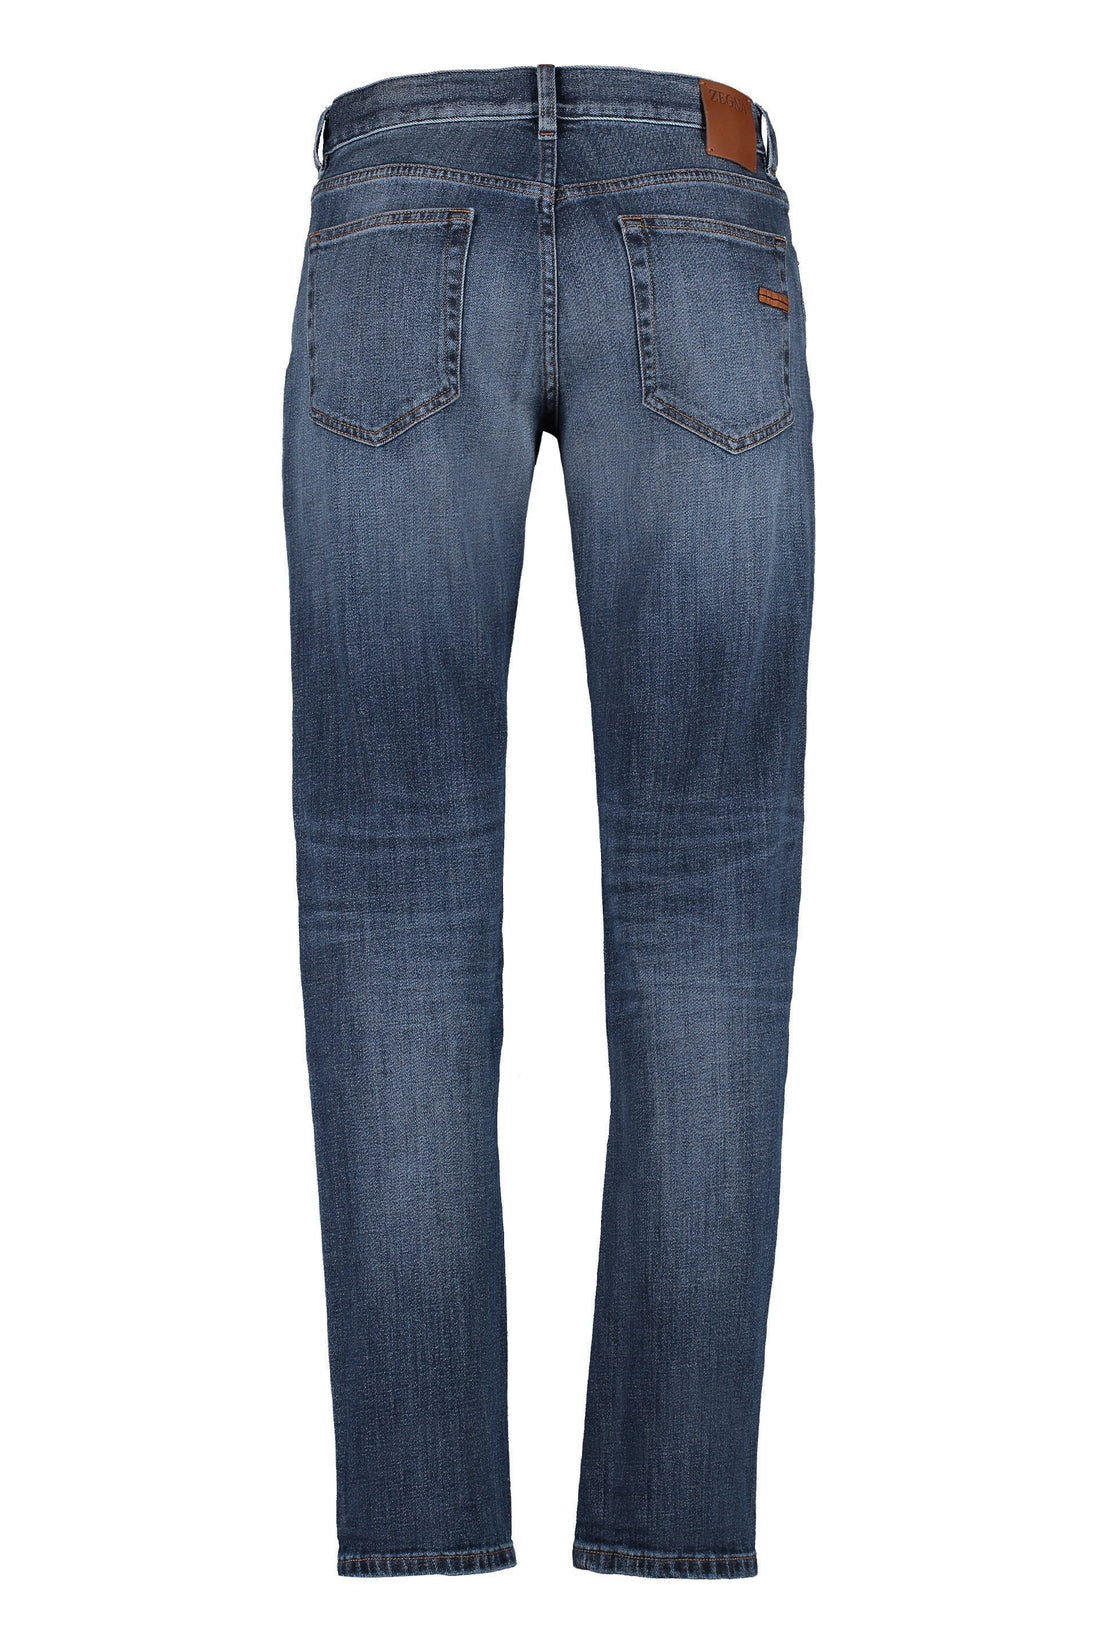 Zegna-OUTLET-SALE-City straight leg jeans-ARCHIVIST